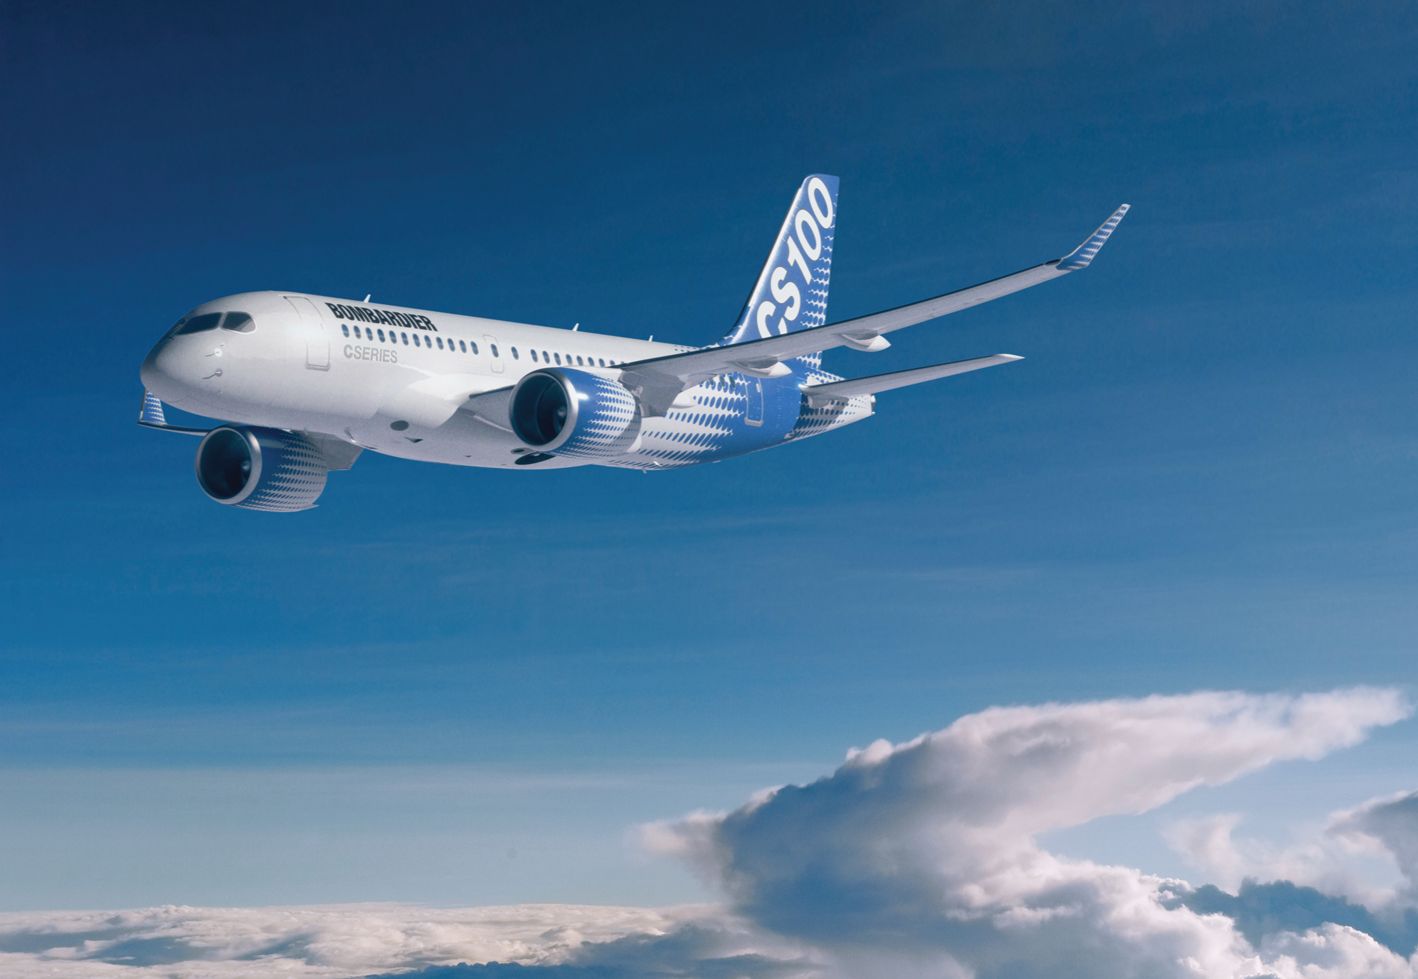 A Bombardier csak egy behatárolt szeletet remélhet a Cseries számára a nagyok mellett a keskenytörzsű piacon